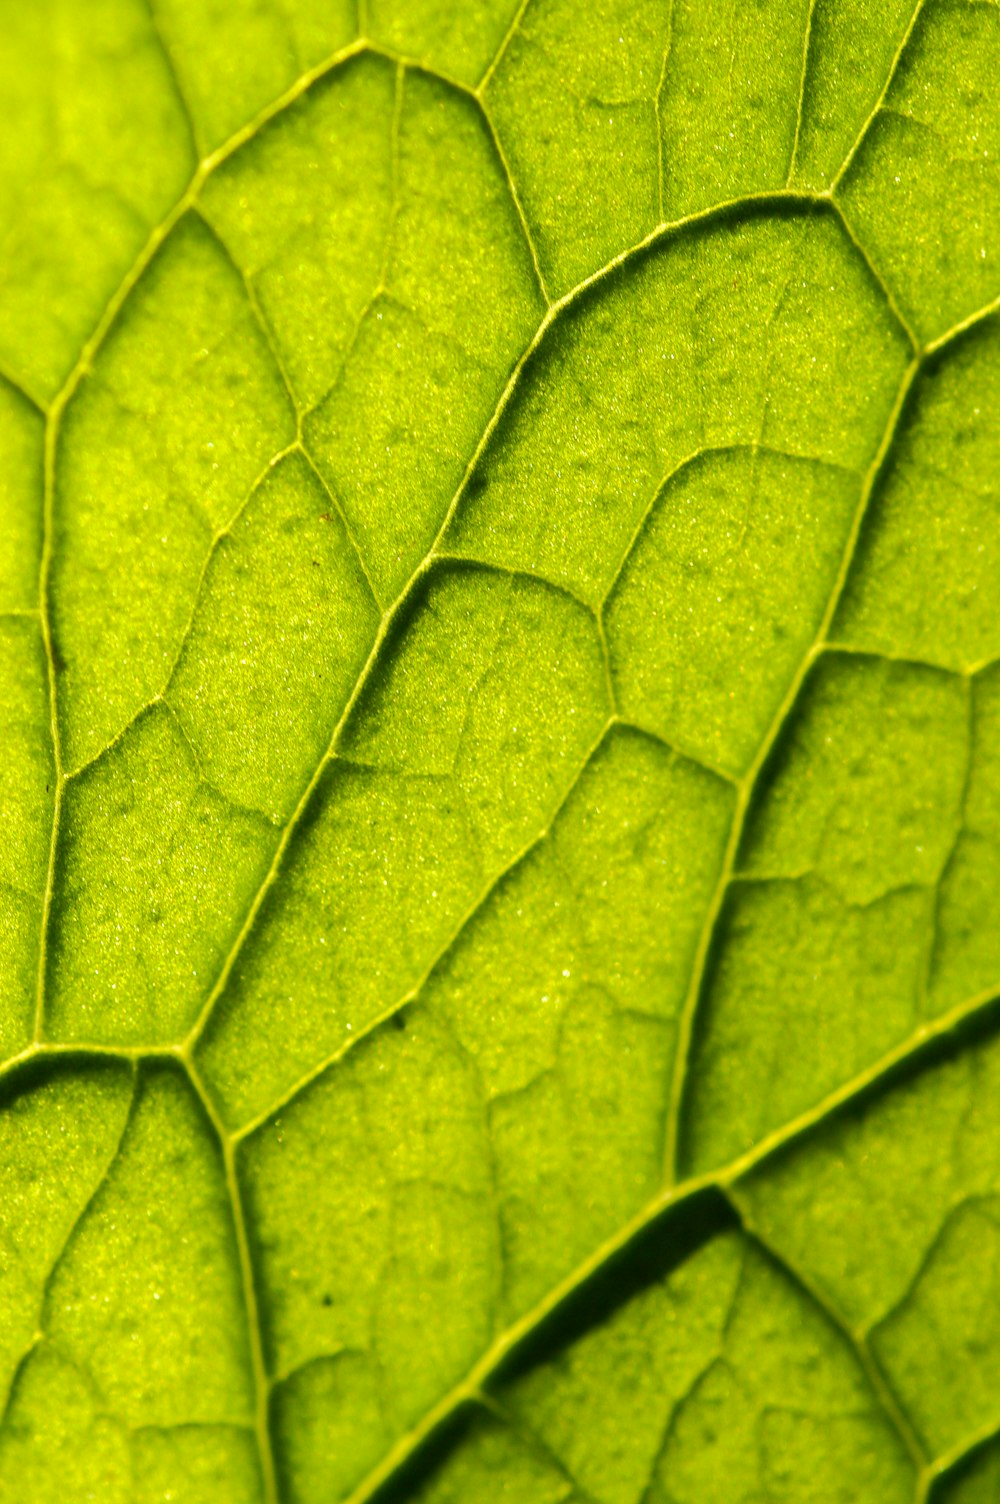 緑の葉のマクロ撮影